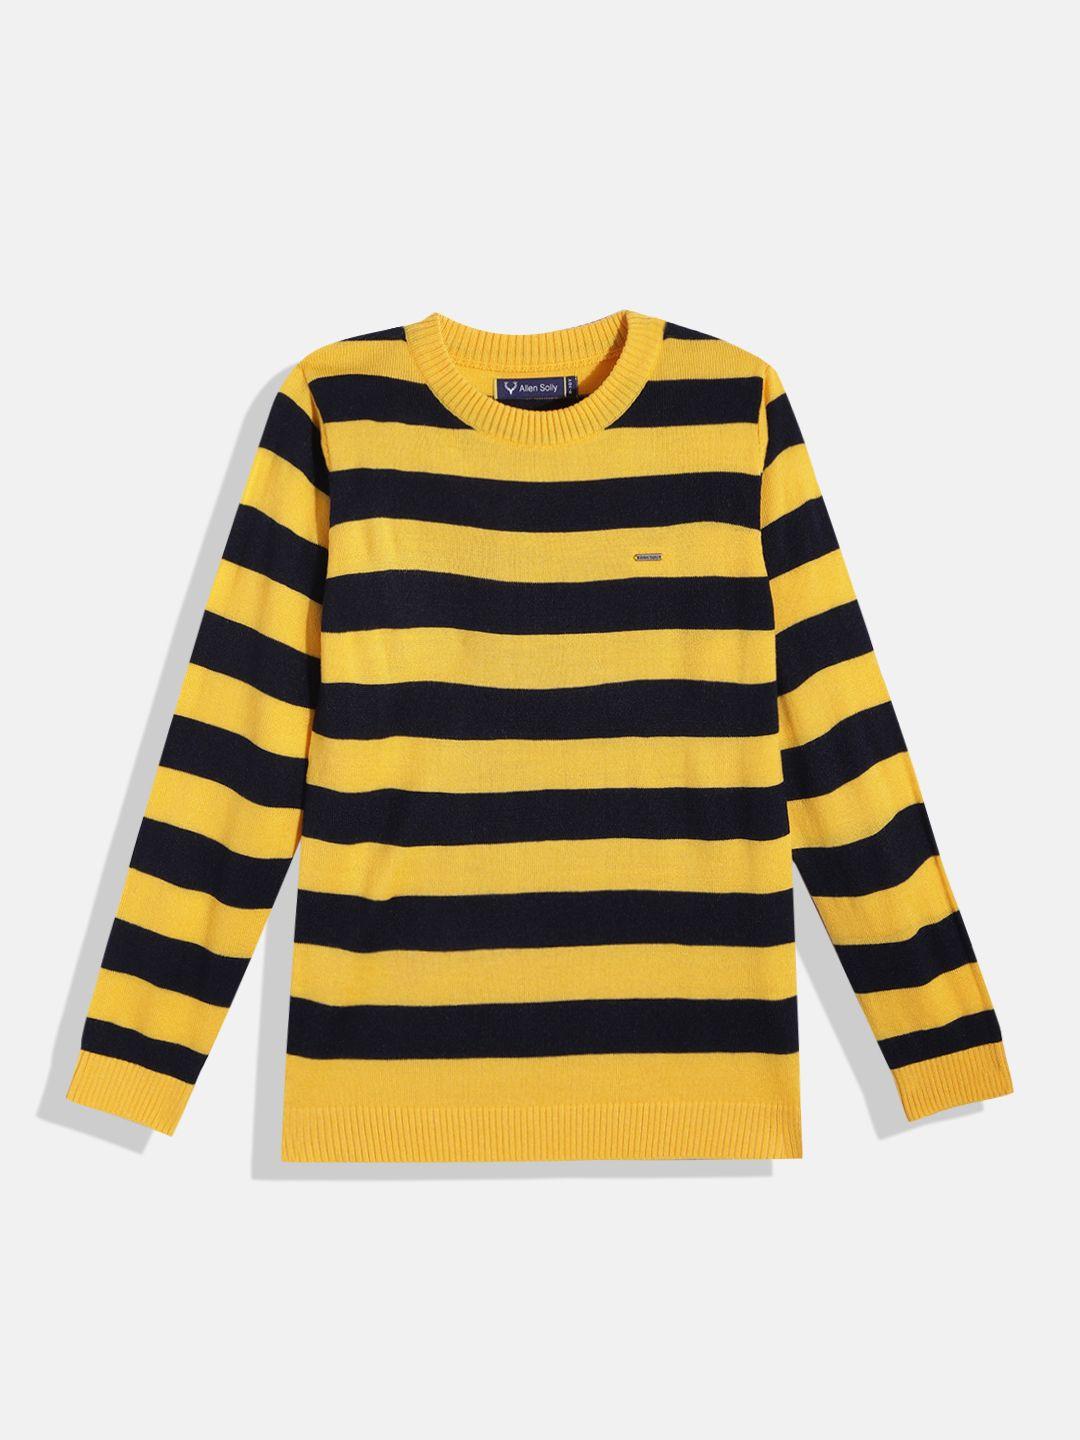 allen-solly-junior-boys-mustard-yellow-&-navy-blue-striped-pullover